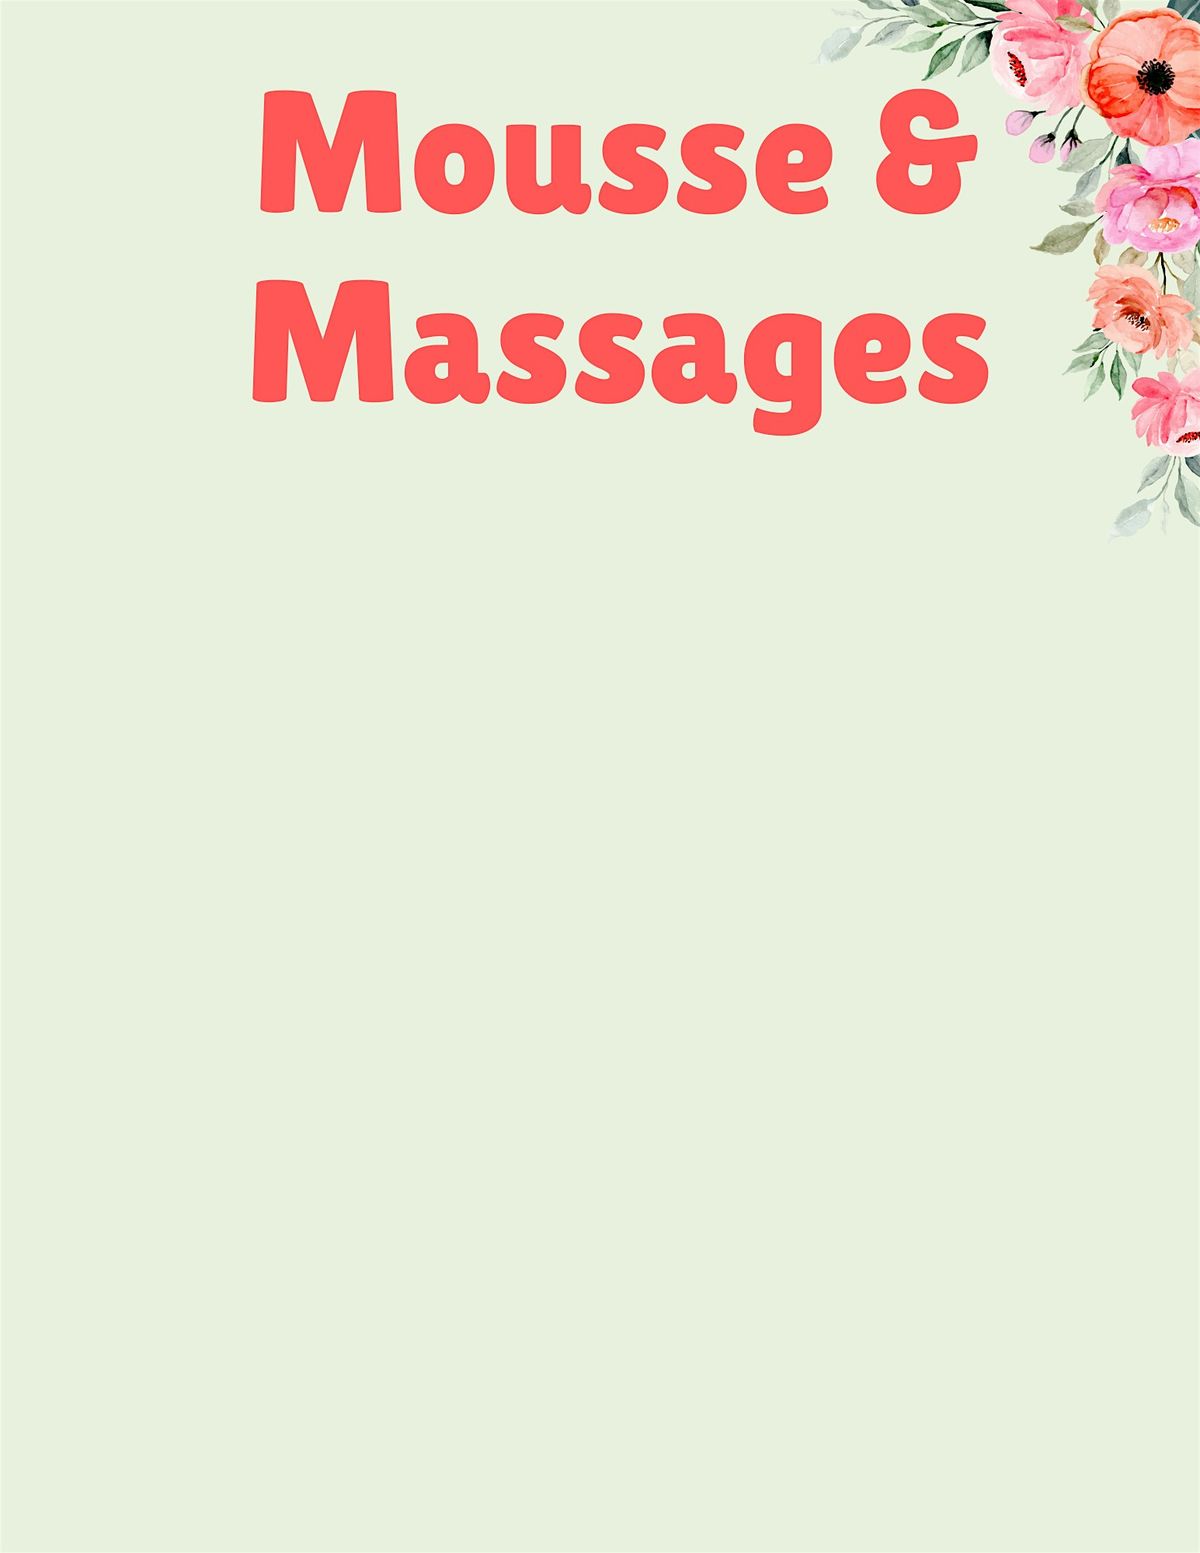 Mousse & Massages